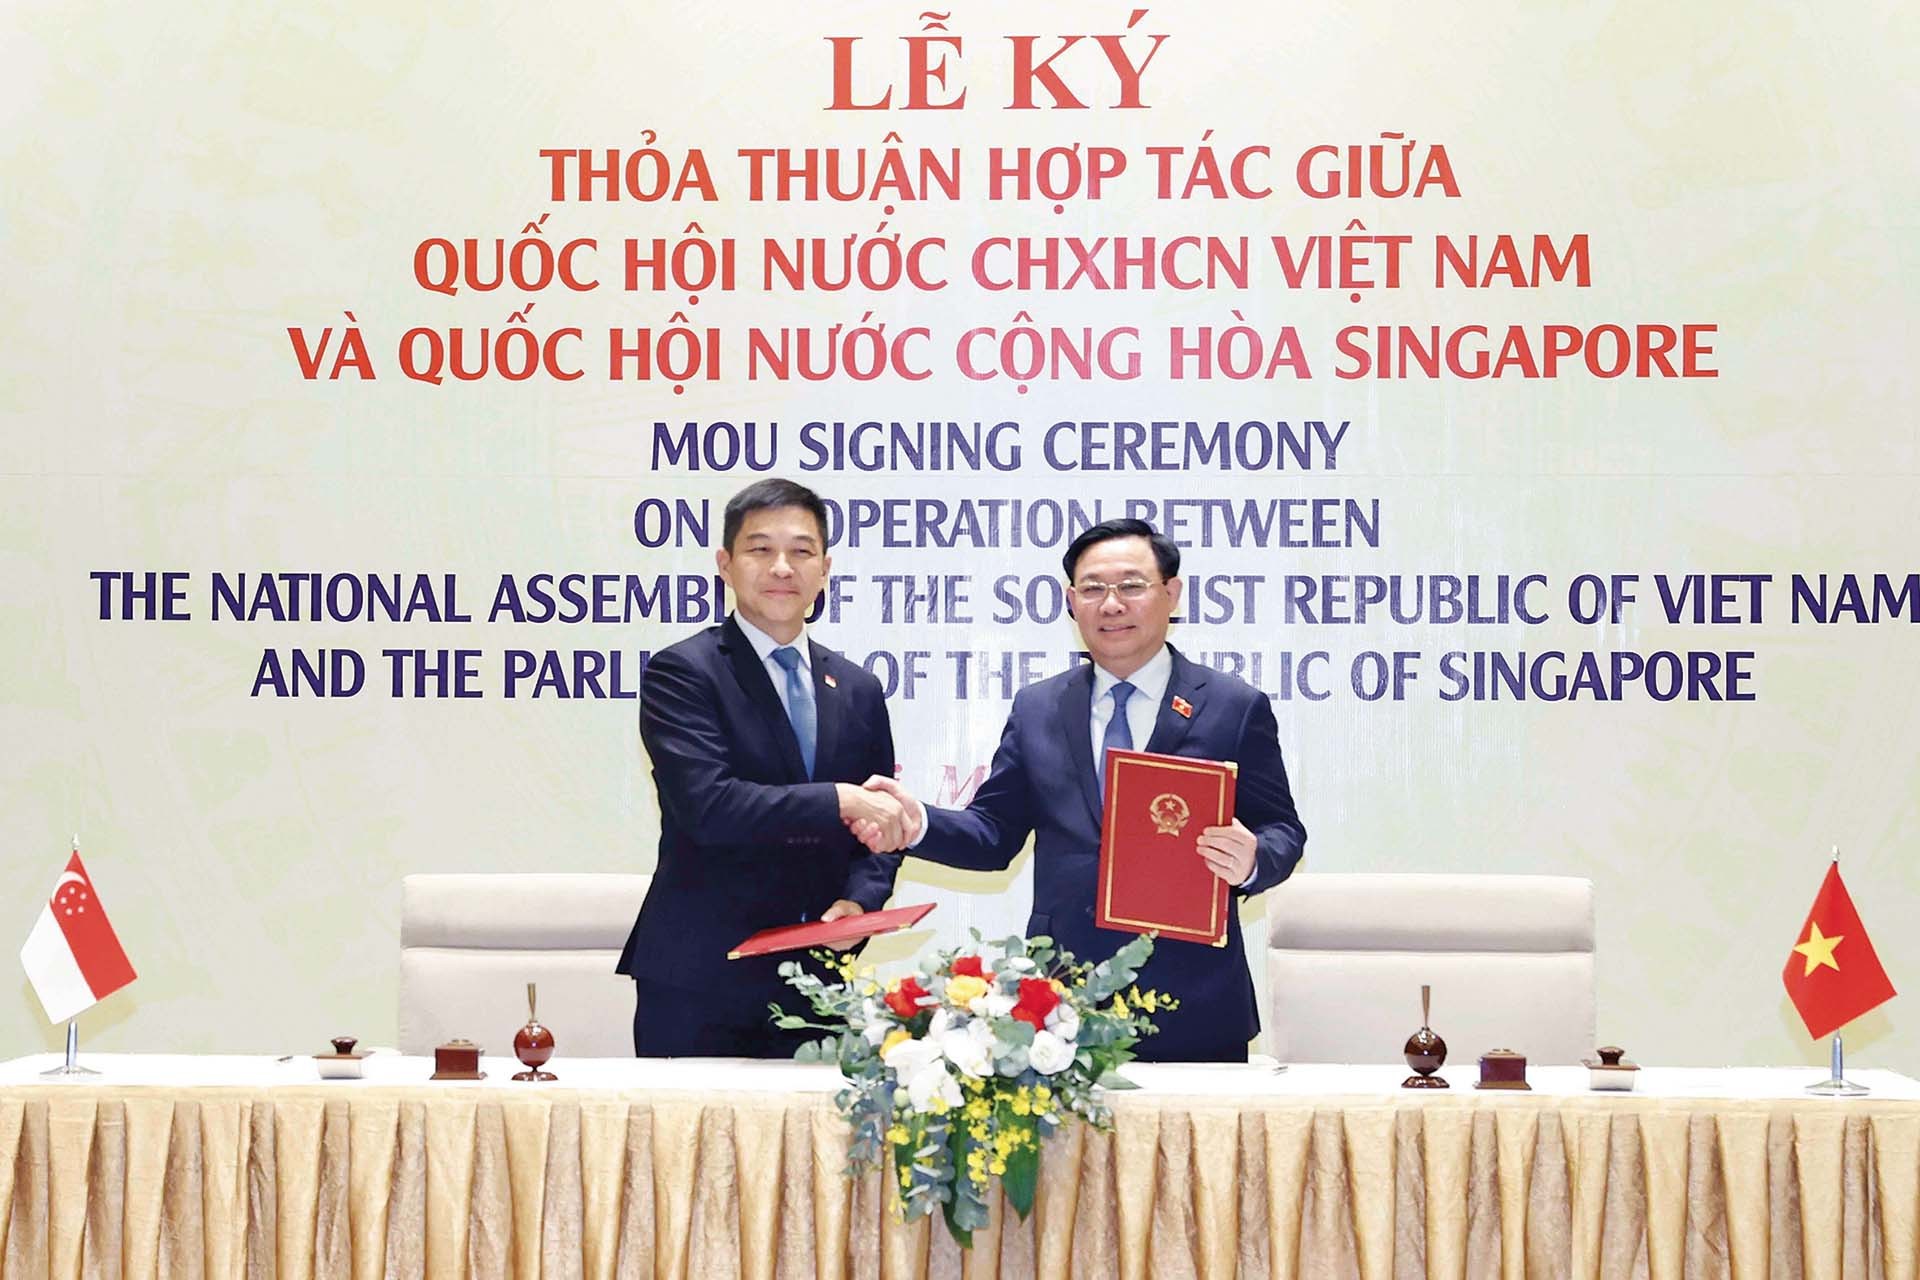 Ngày 18/5/2022, Chủ tịch Quốc hội Vương Đình Huệ và Chủ tịch Quốc hội Singapore Tan Chuan-Jin cùng thực hiện Lễ ký Thỏa thuận hợp tác giữa hai Quốc hội Việt Nam và Singapore.